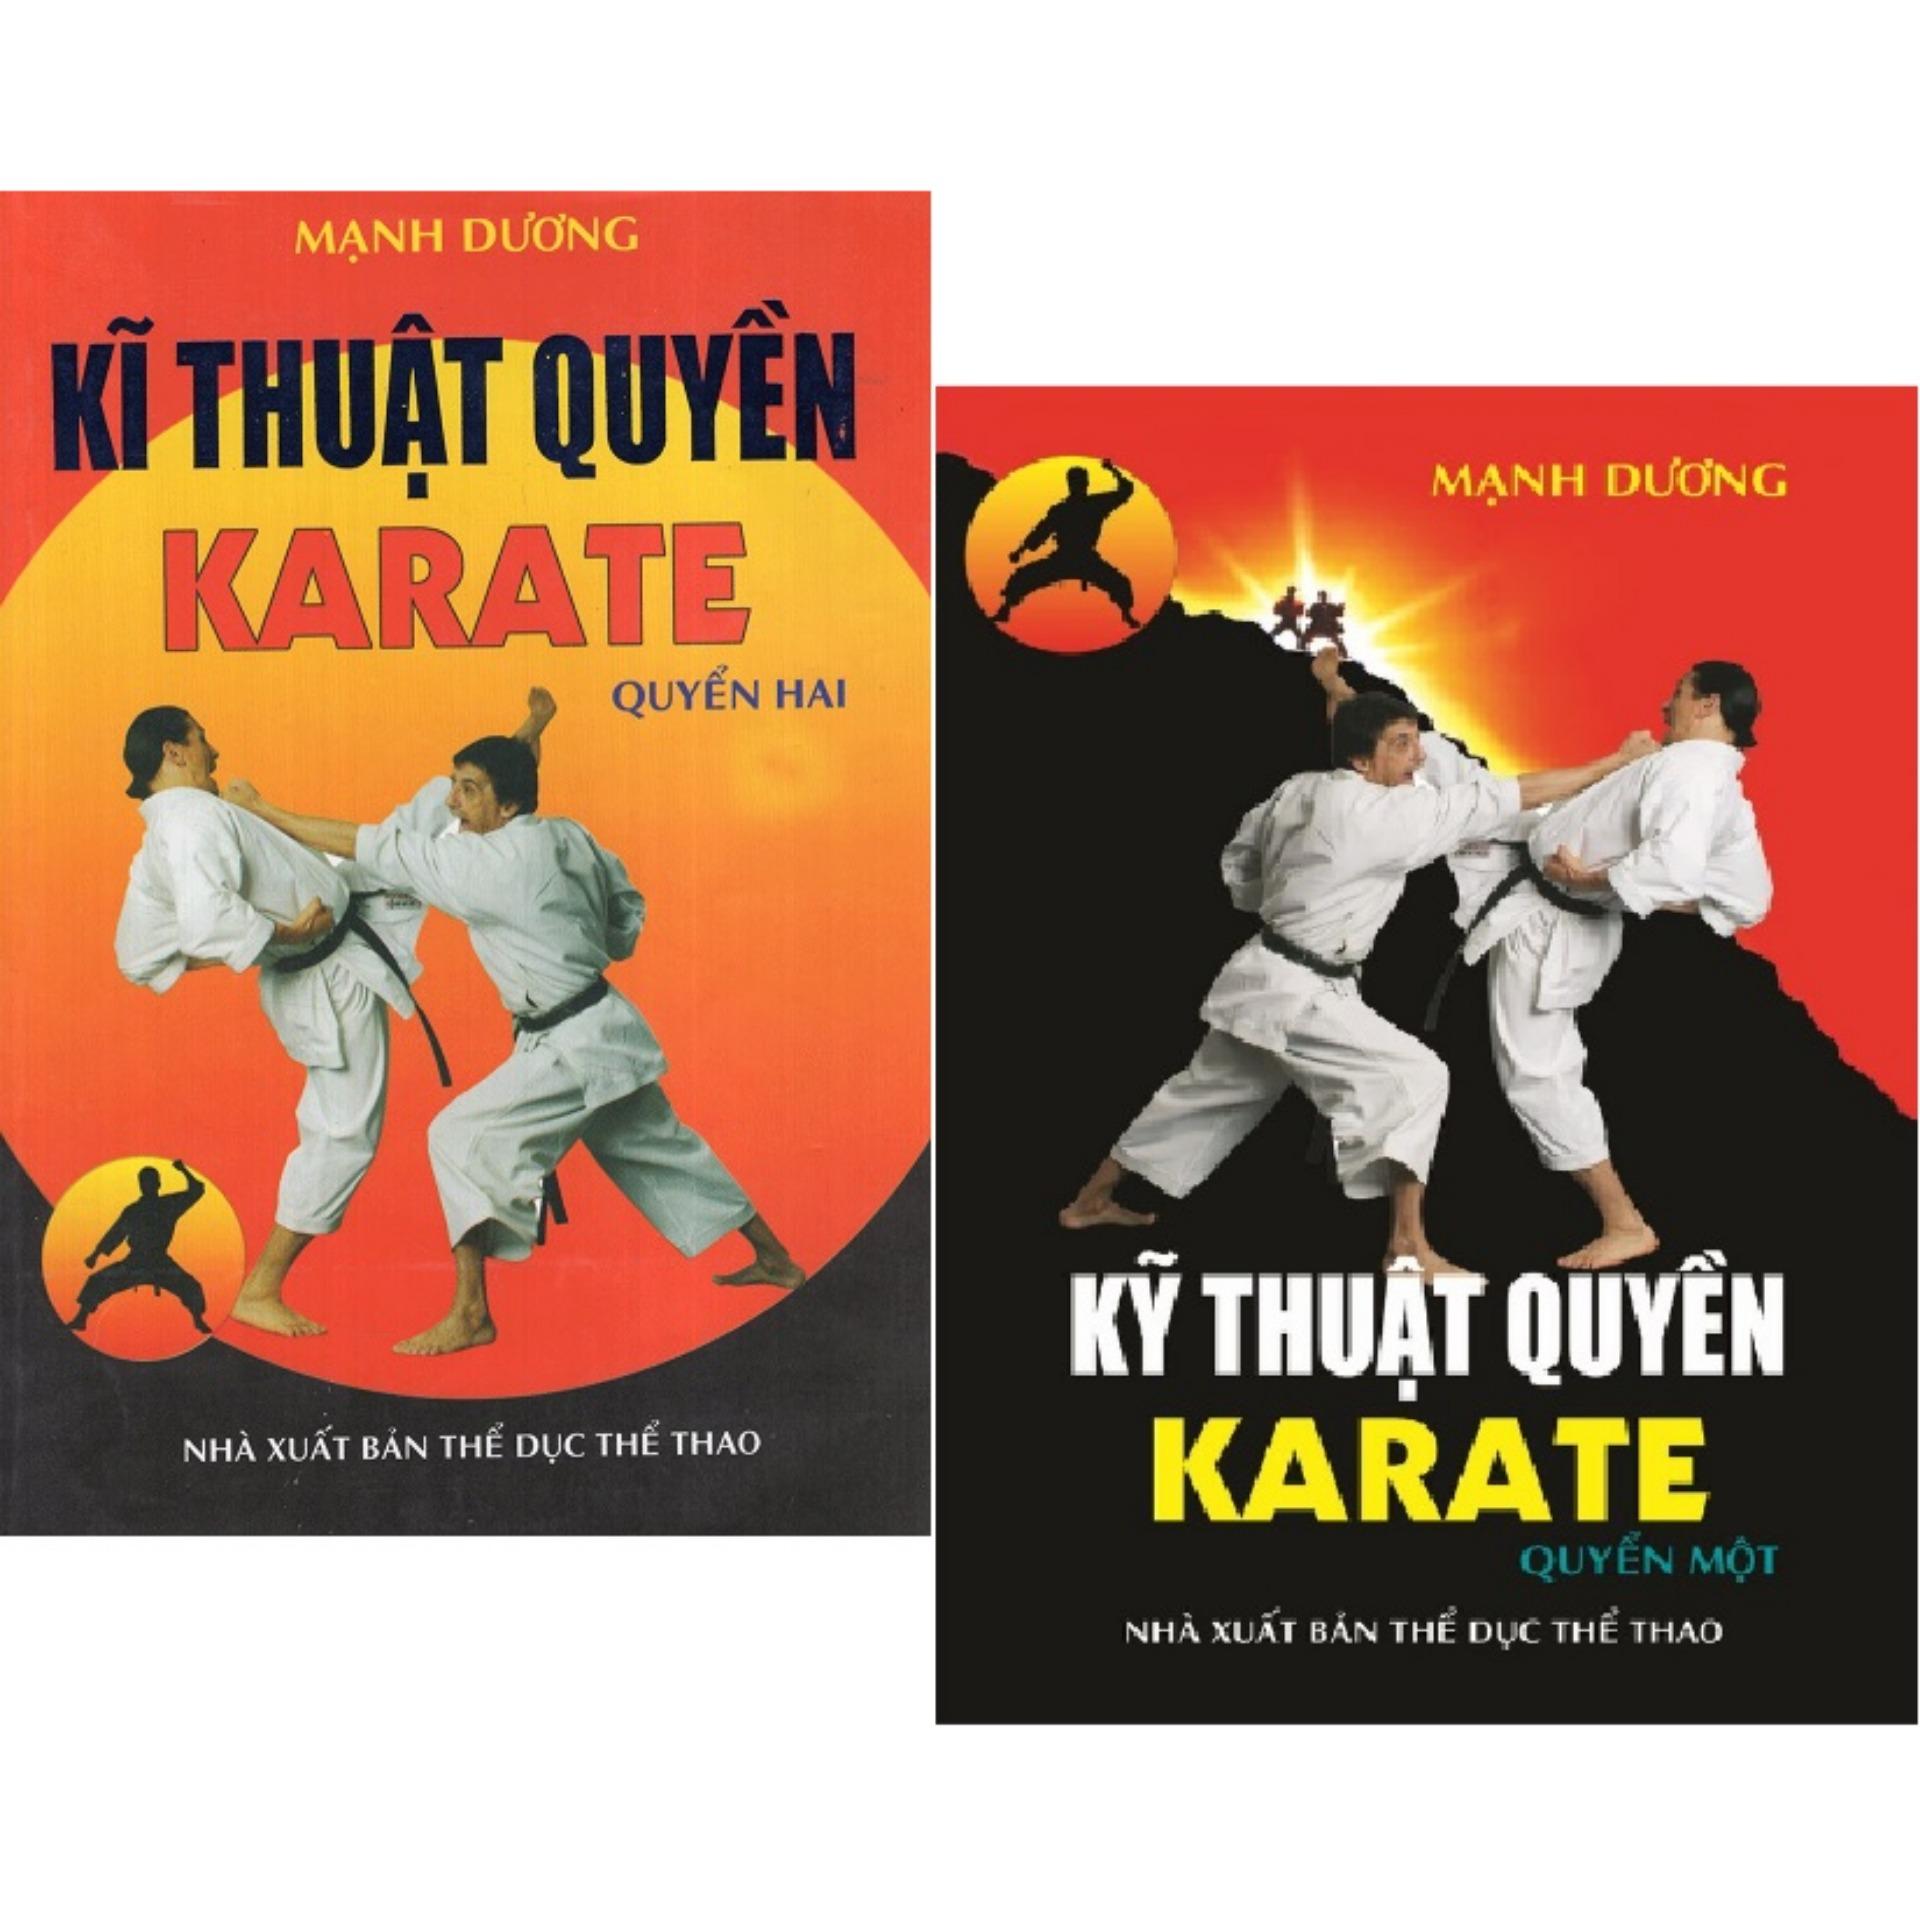 Hướng dẫn học karatedo cơ bản